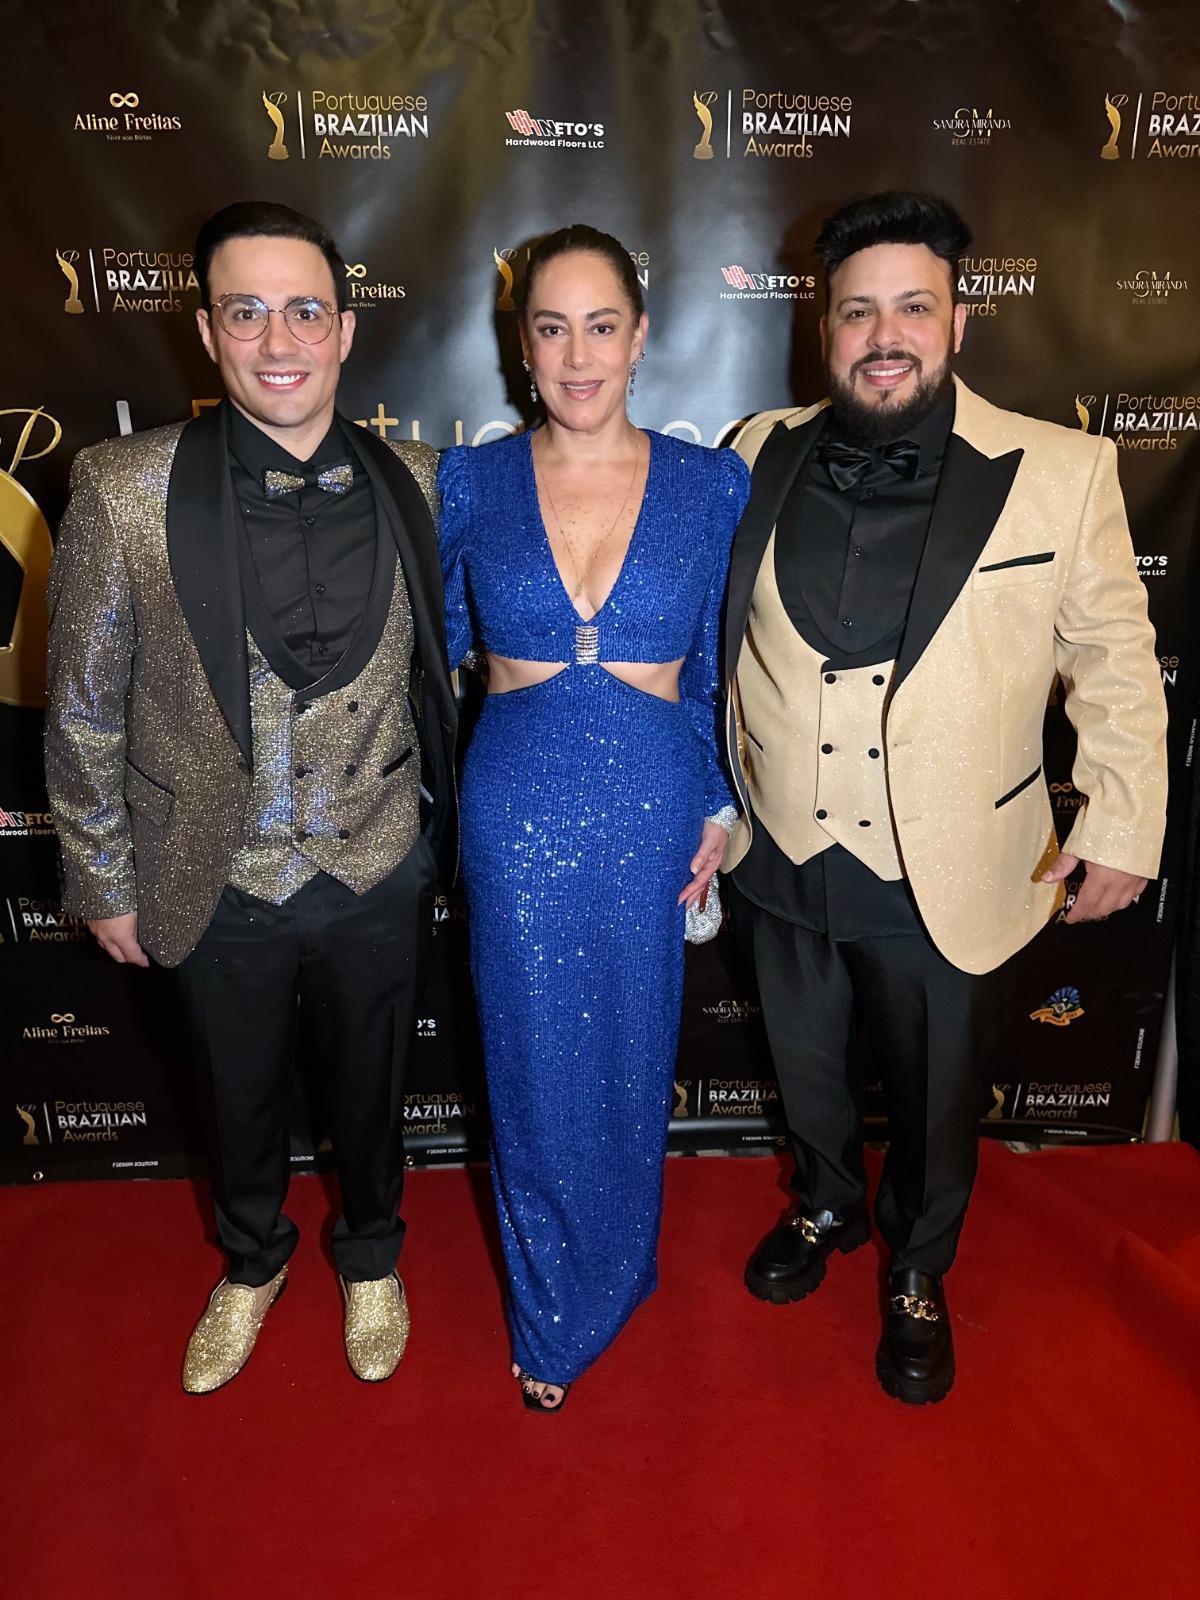 Silvia Abravanel e a dupla Gustavo Moura e Rafael recebem prêmios em Nova York